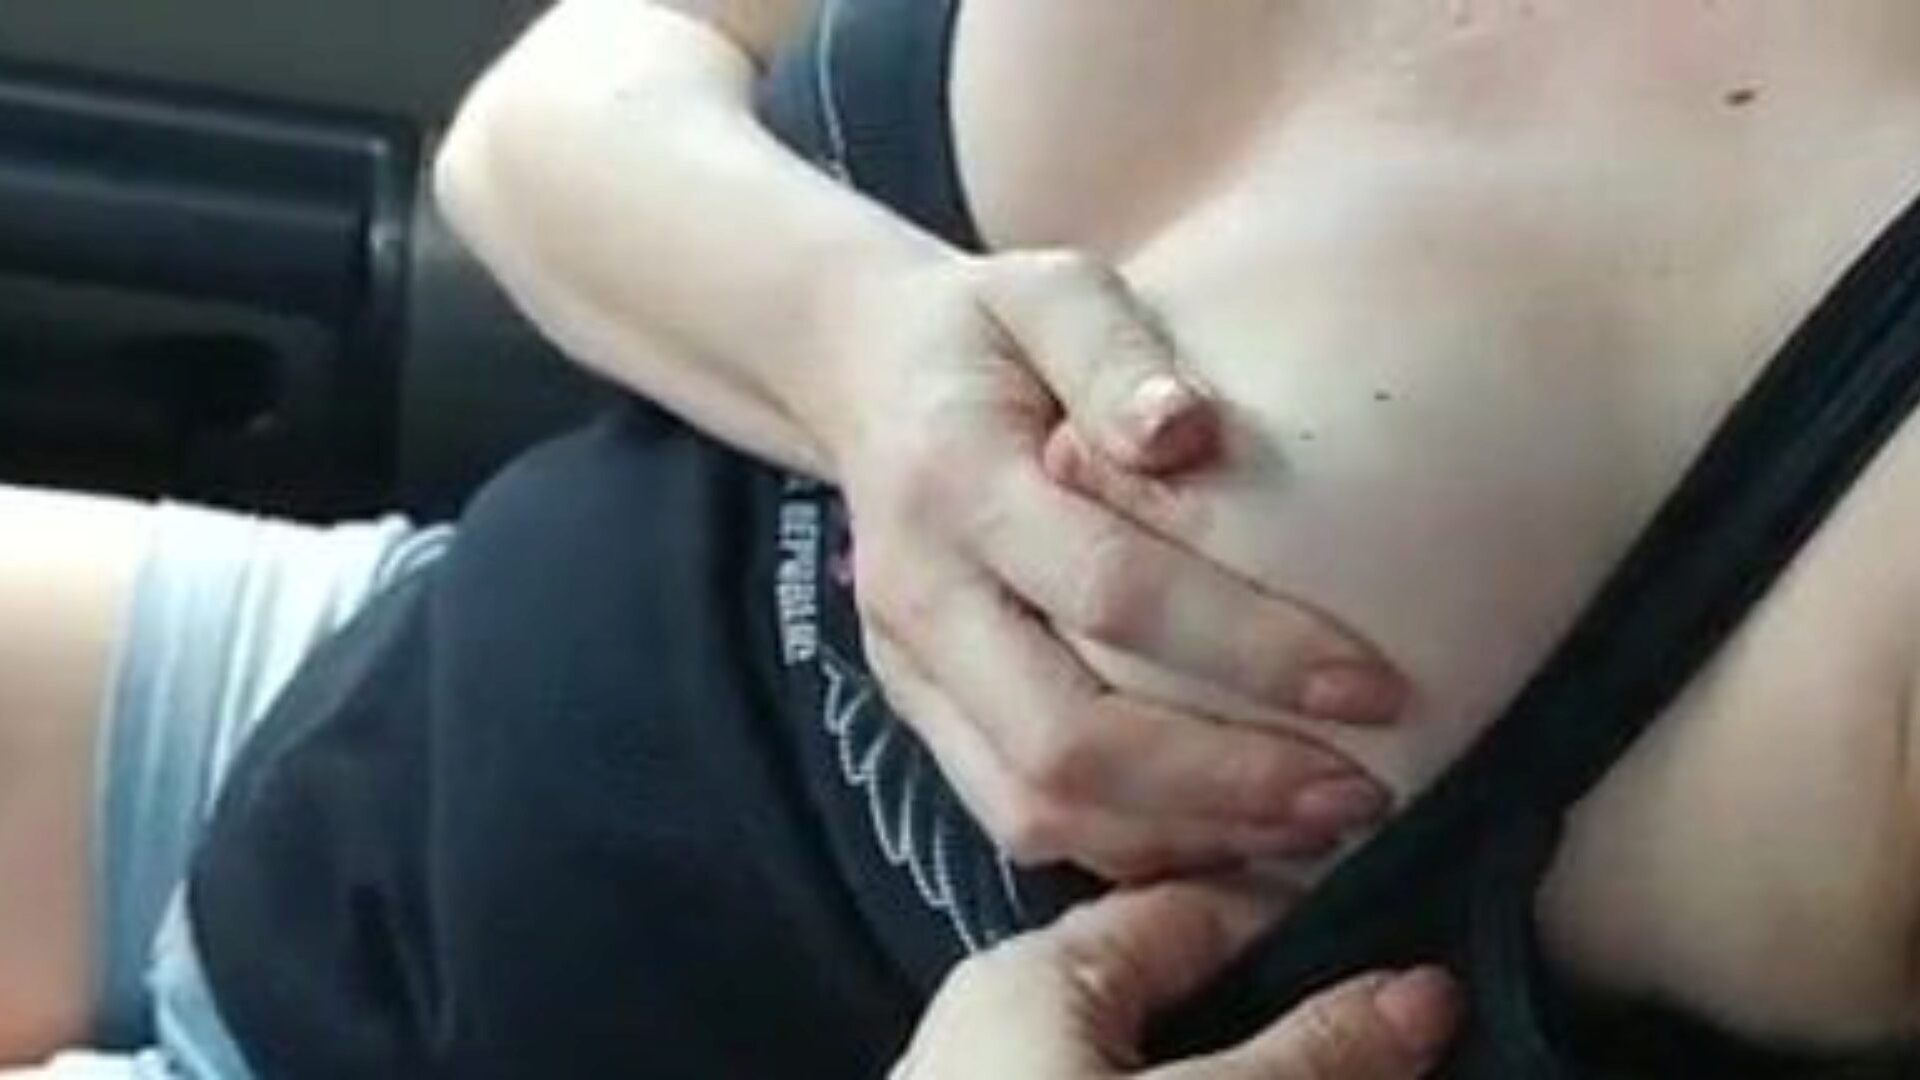 η καυτή μαμά στο αυτοκίνητο πρέπει να σκατά, δωρεάν κινητό μαμά πορνό βίντεο παρακολουθήσει η καυτή μαμά στο αυτοκίνητο πρέπει να σκατά κλιπ στο xhamster, ο καλύτερος πόρος ιστού αγάπης με πολλούς δωρεάν mom mom beeg mom & xxx mom porn videos